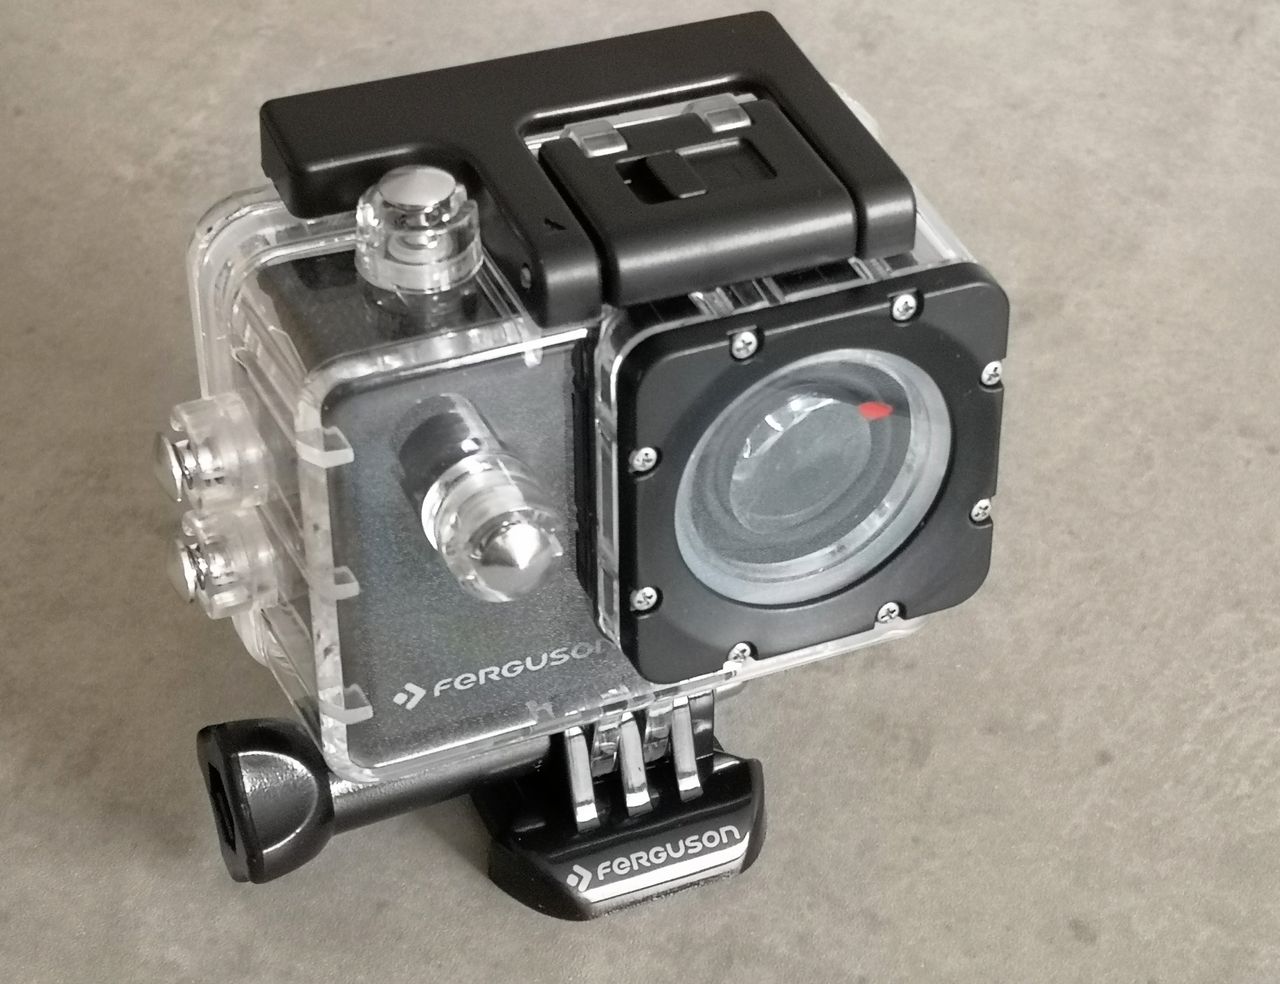 Test kamerki Ferguson eXtreme Action CAM – rozsądna propozycja